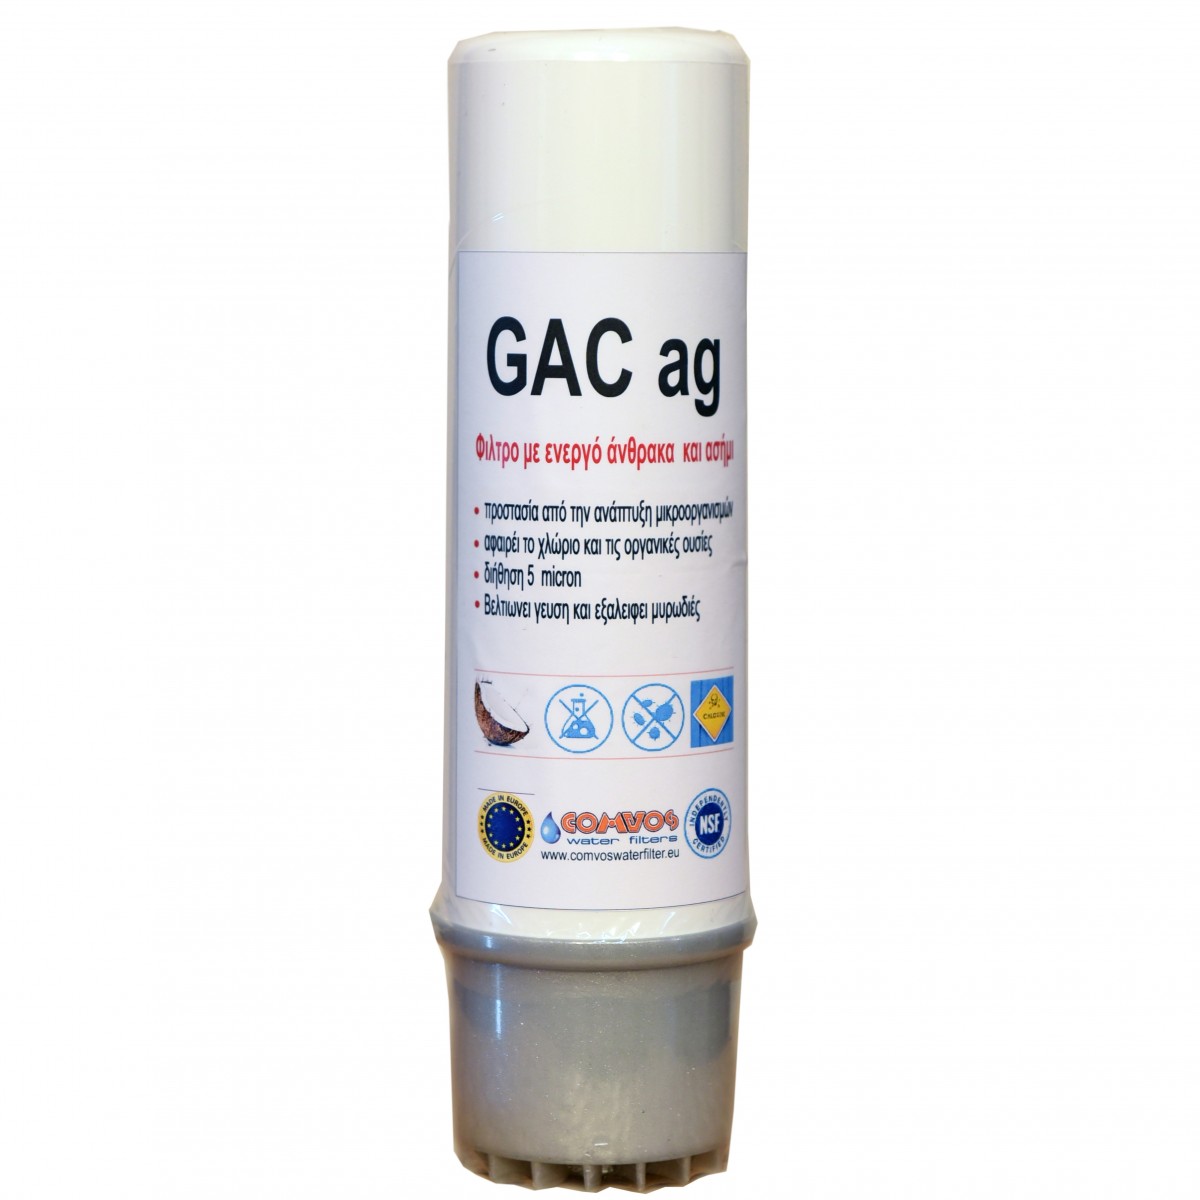 ανταλλακτικό φίλτρο ενεργού ανθρακα cag+ag filter με ασημι